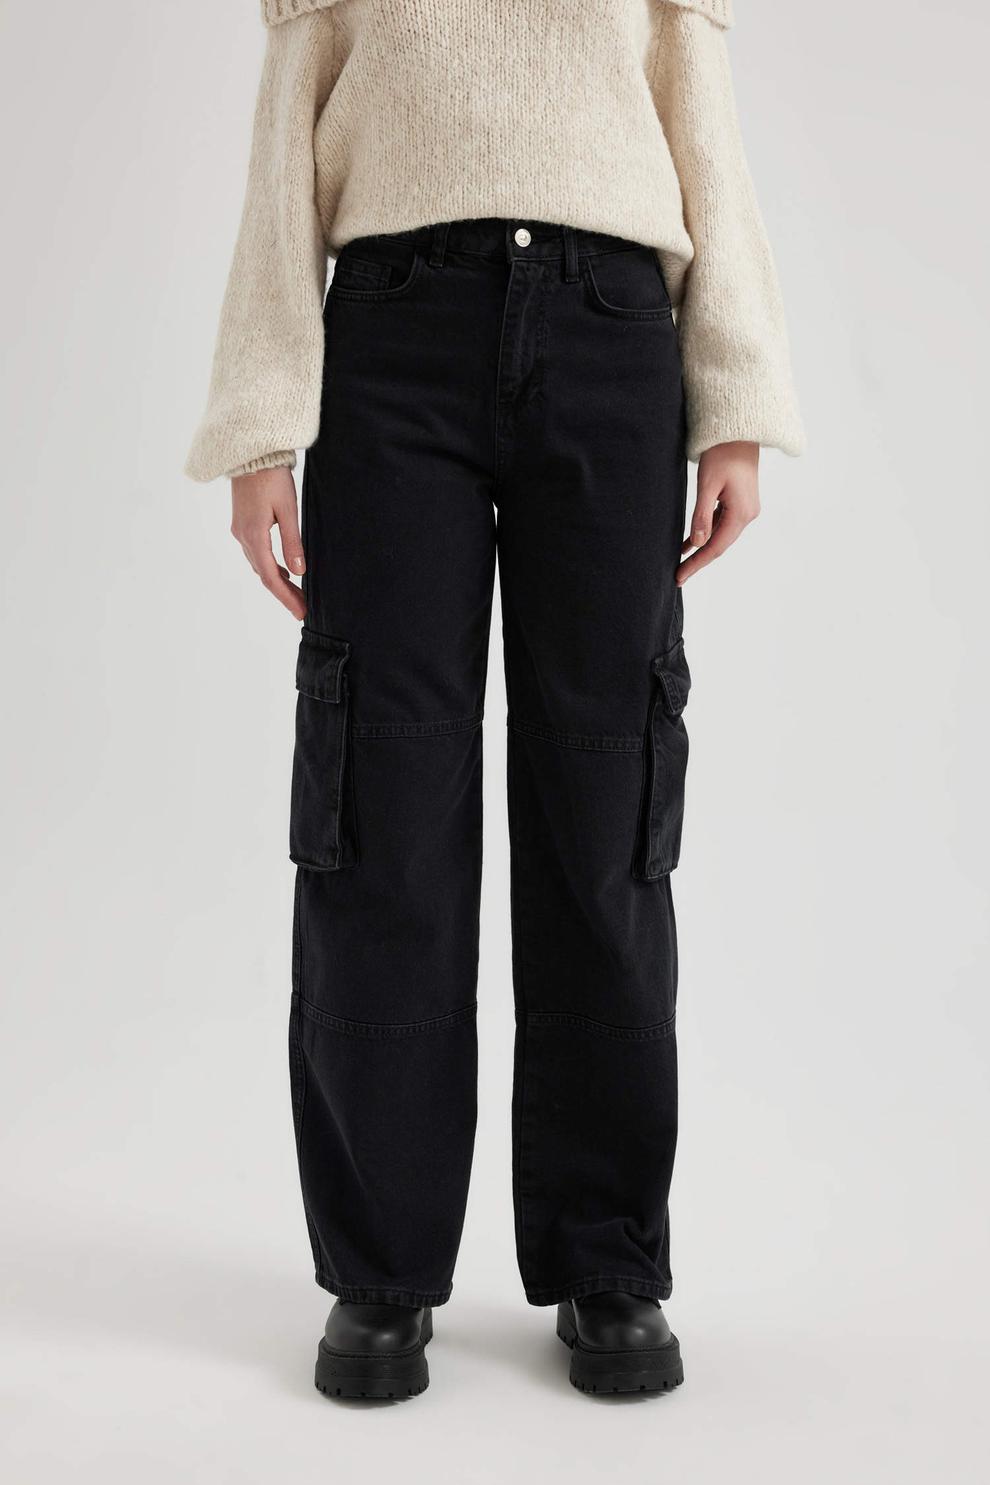 Pantalon Jean Cargo Taille Haute Droit Et Long offre à 299 Dh sur Defacto